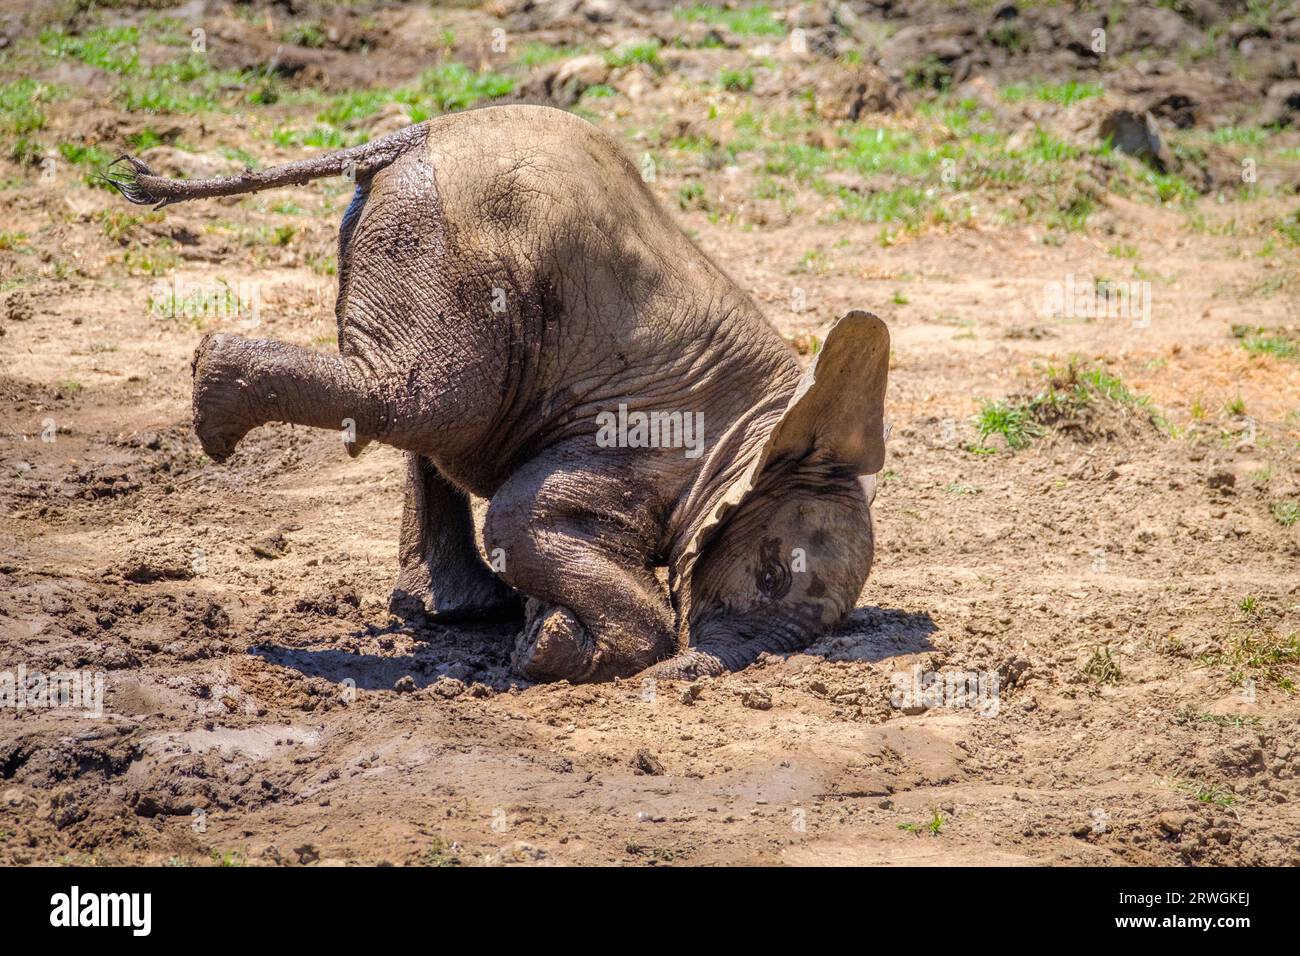 Les bébés éléphants (Loxodonta africana) se coincent la tête dans la boue. le veau éléphant joue dans la boue. Parc national du Bas-Zambèze, Zambie, Afrique Banque D'Images